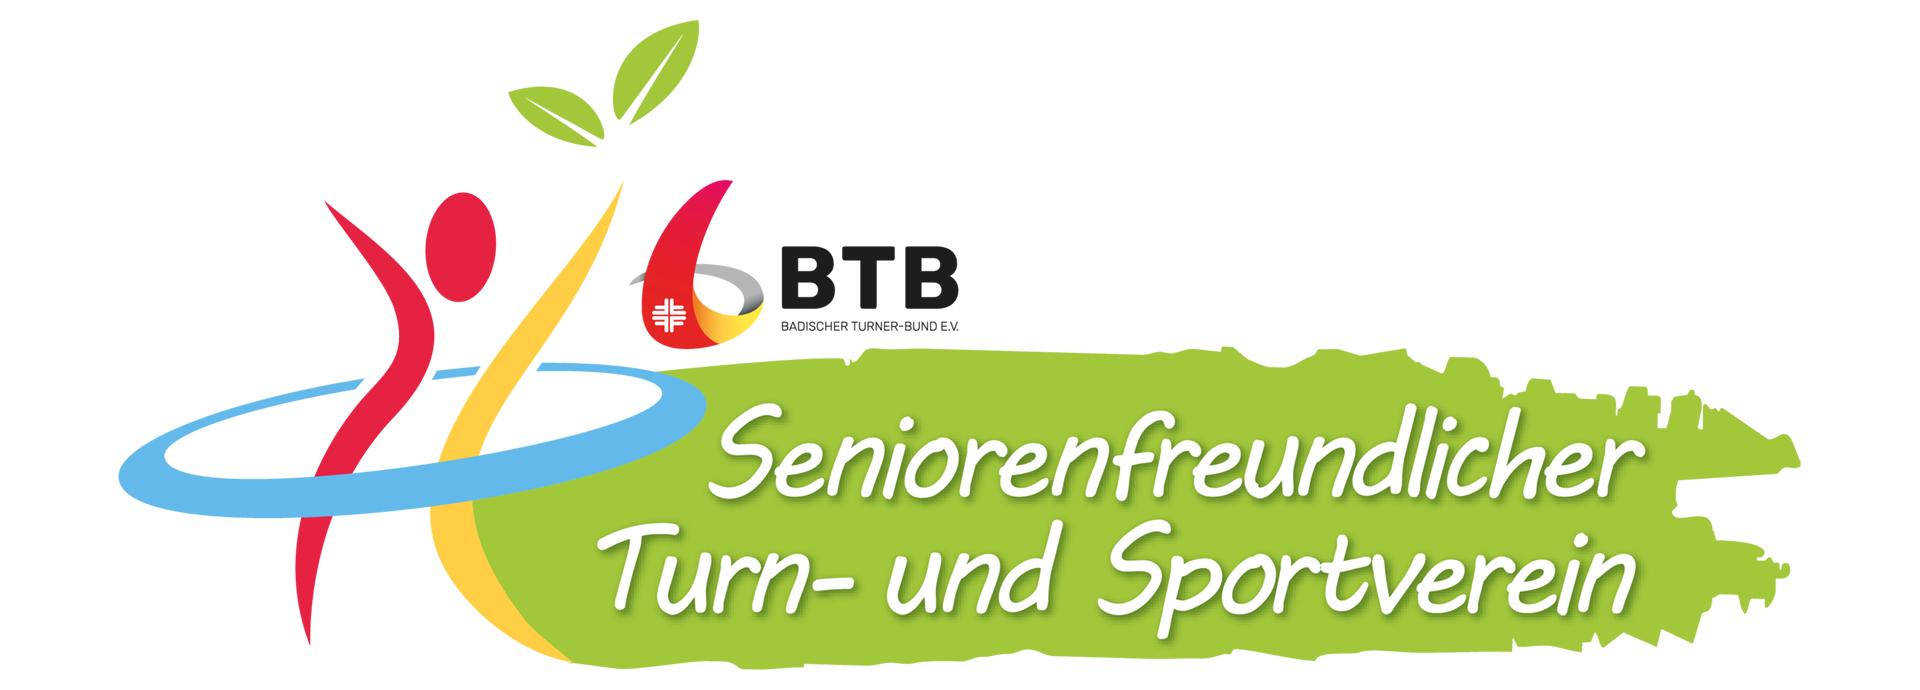 Seniorenfreundlicher Turn- und Sportverein TV Schriesheim